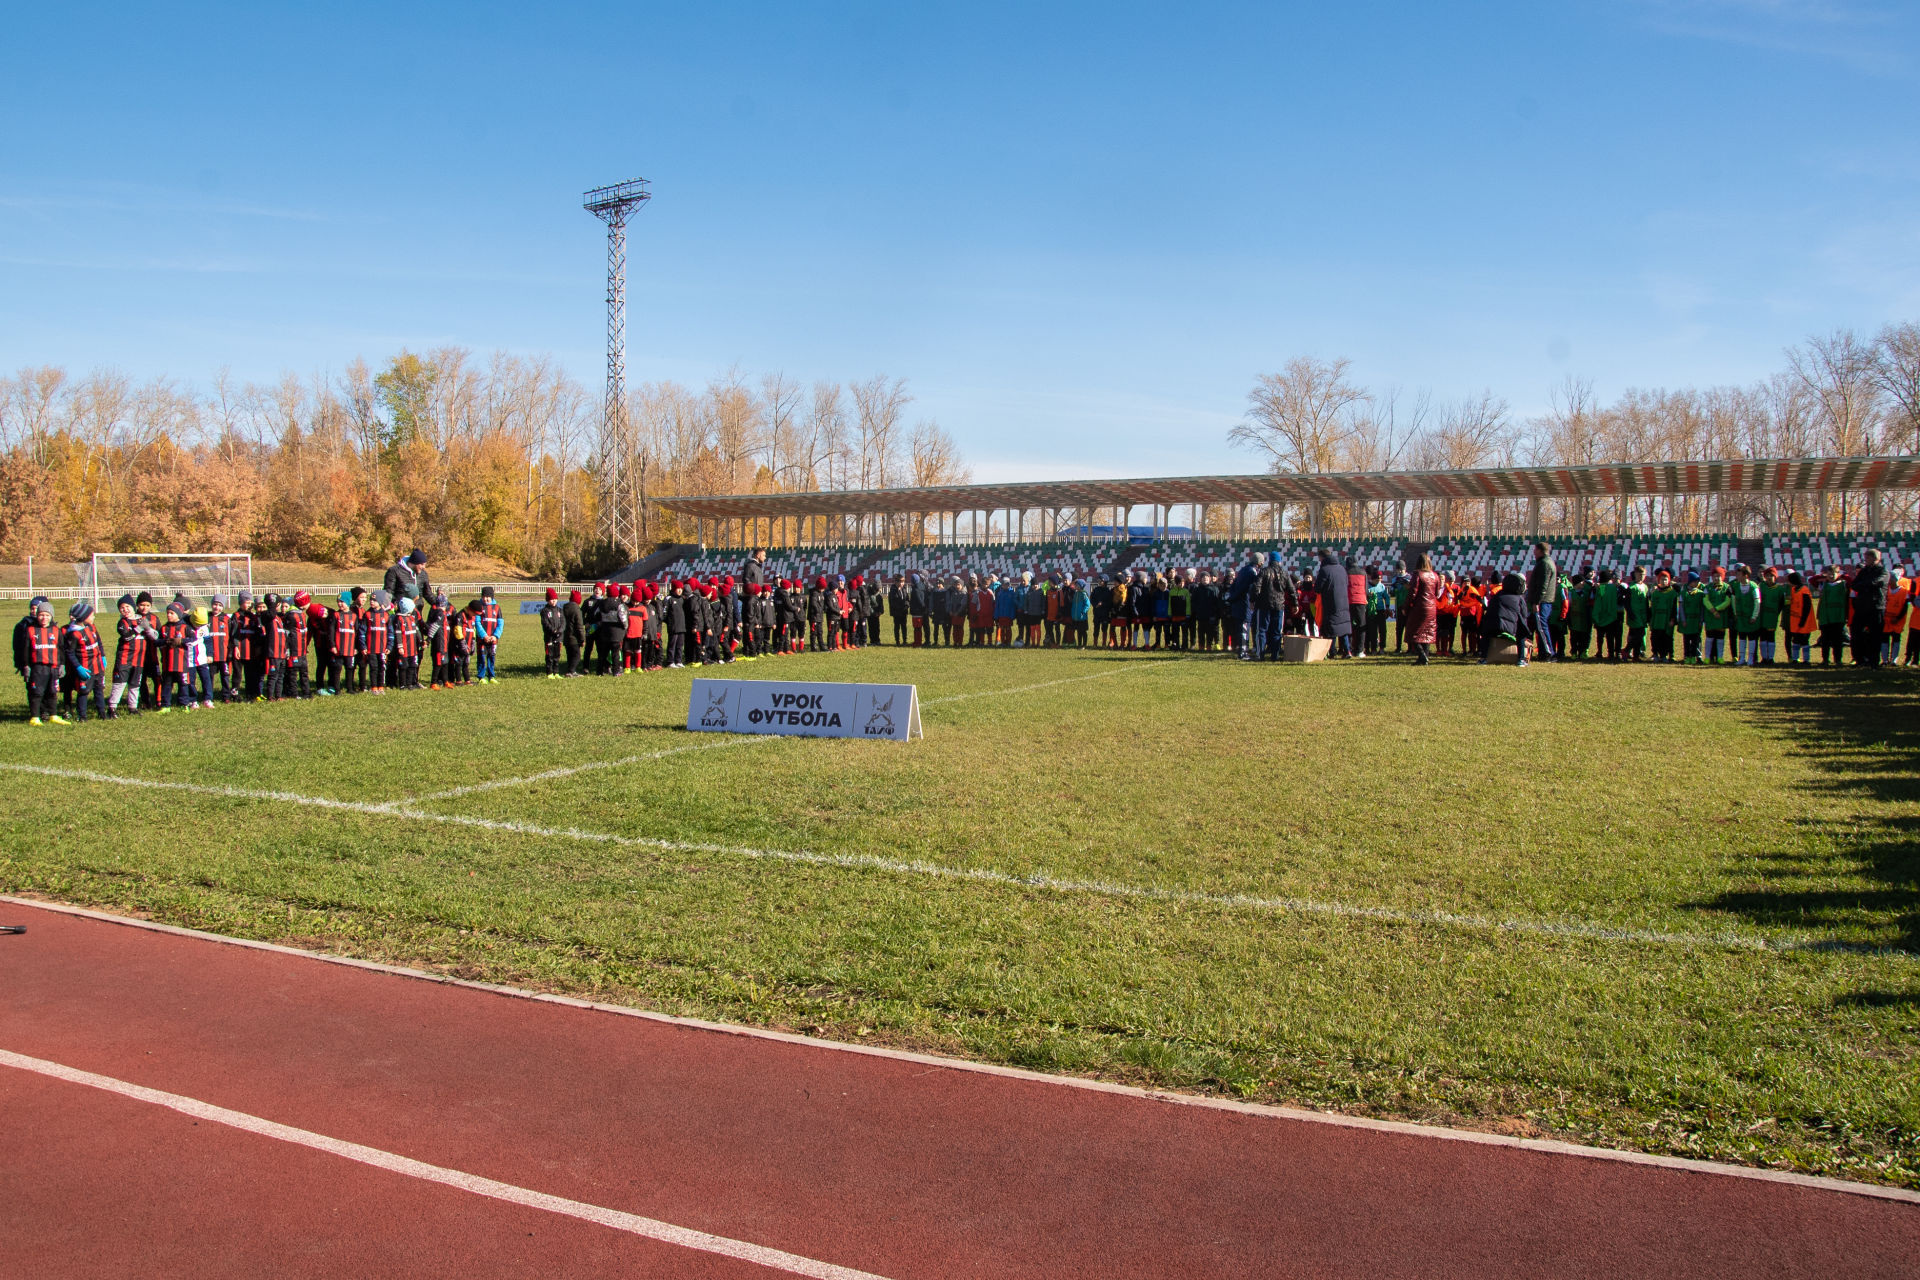 В Бугульме прошел урок футбола с экс-игроками сборной России